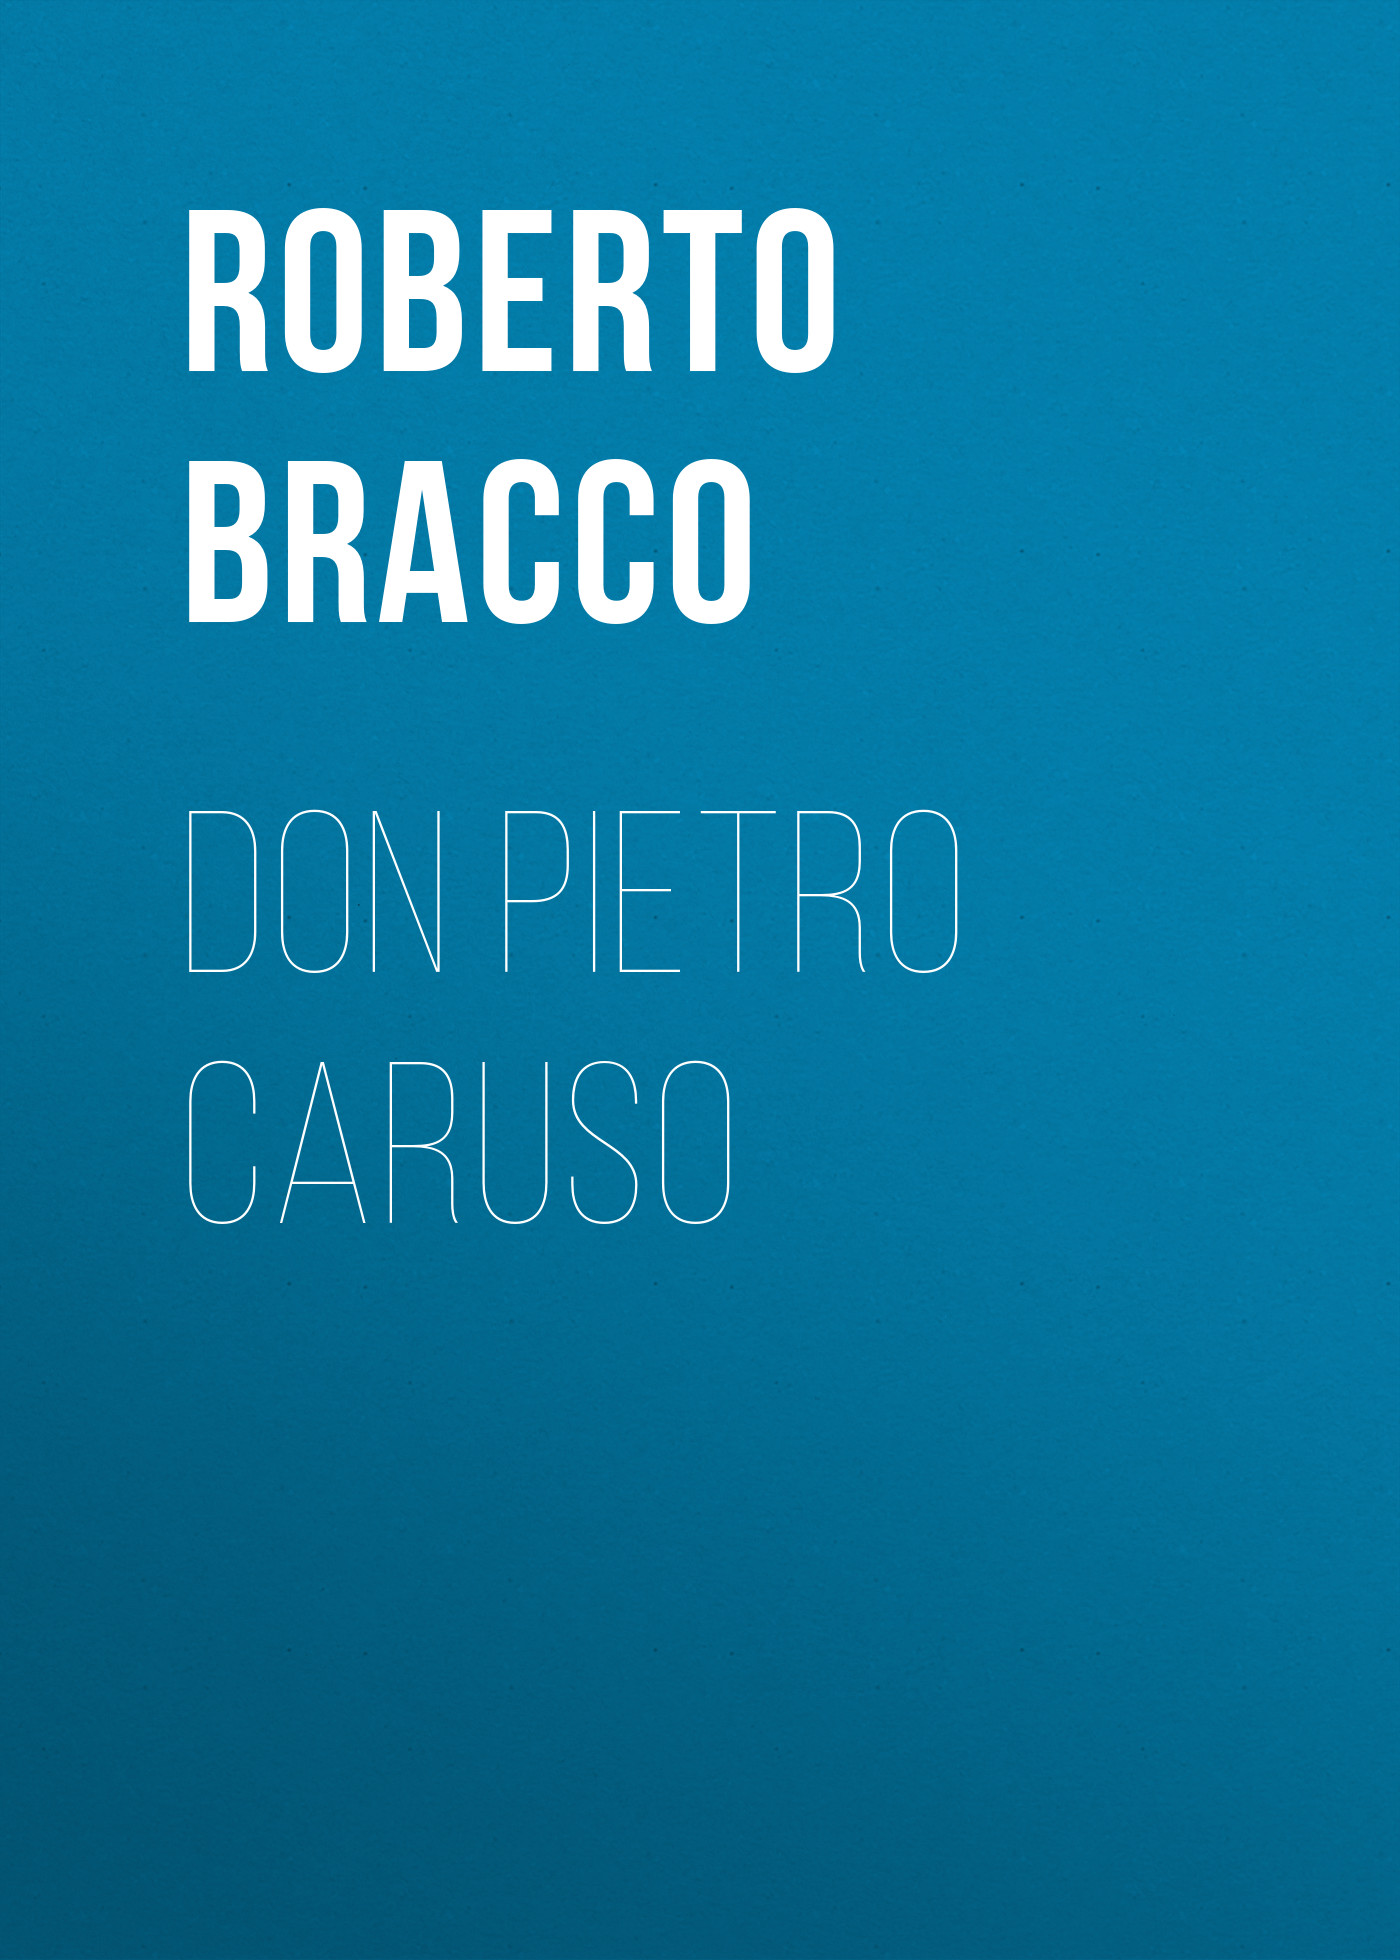 Книга Don Pietro Caruso из серии , созданная Roberto Bracco, может относится к жанру Зарубежная старинная литература, Зарубежная классика, Зарубежная драматургия. Стоимость электронной книги Don Pietro Caruso с идентификатором 24179708 составляет 0.90 руб.